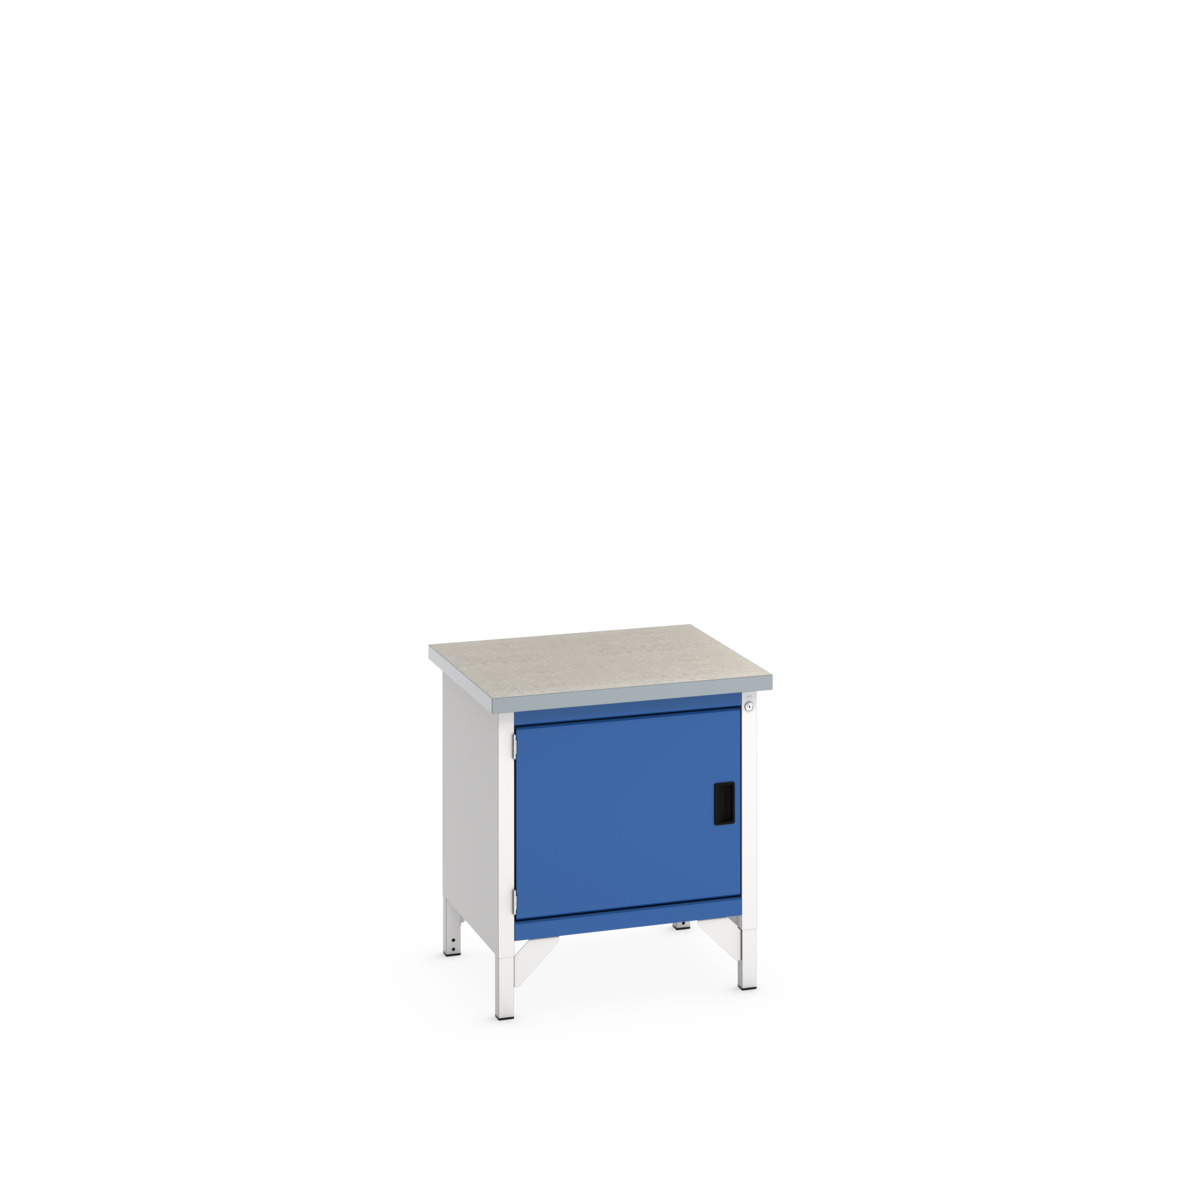 41002006.11V - cubio storage bench (lino)